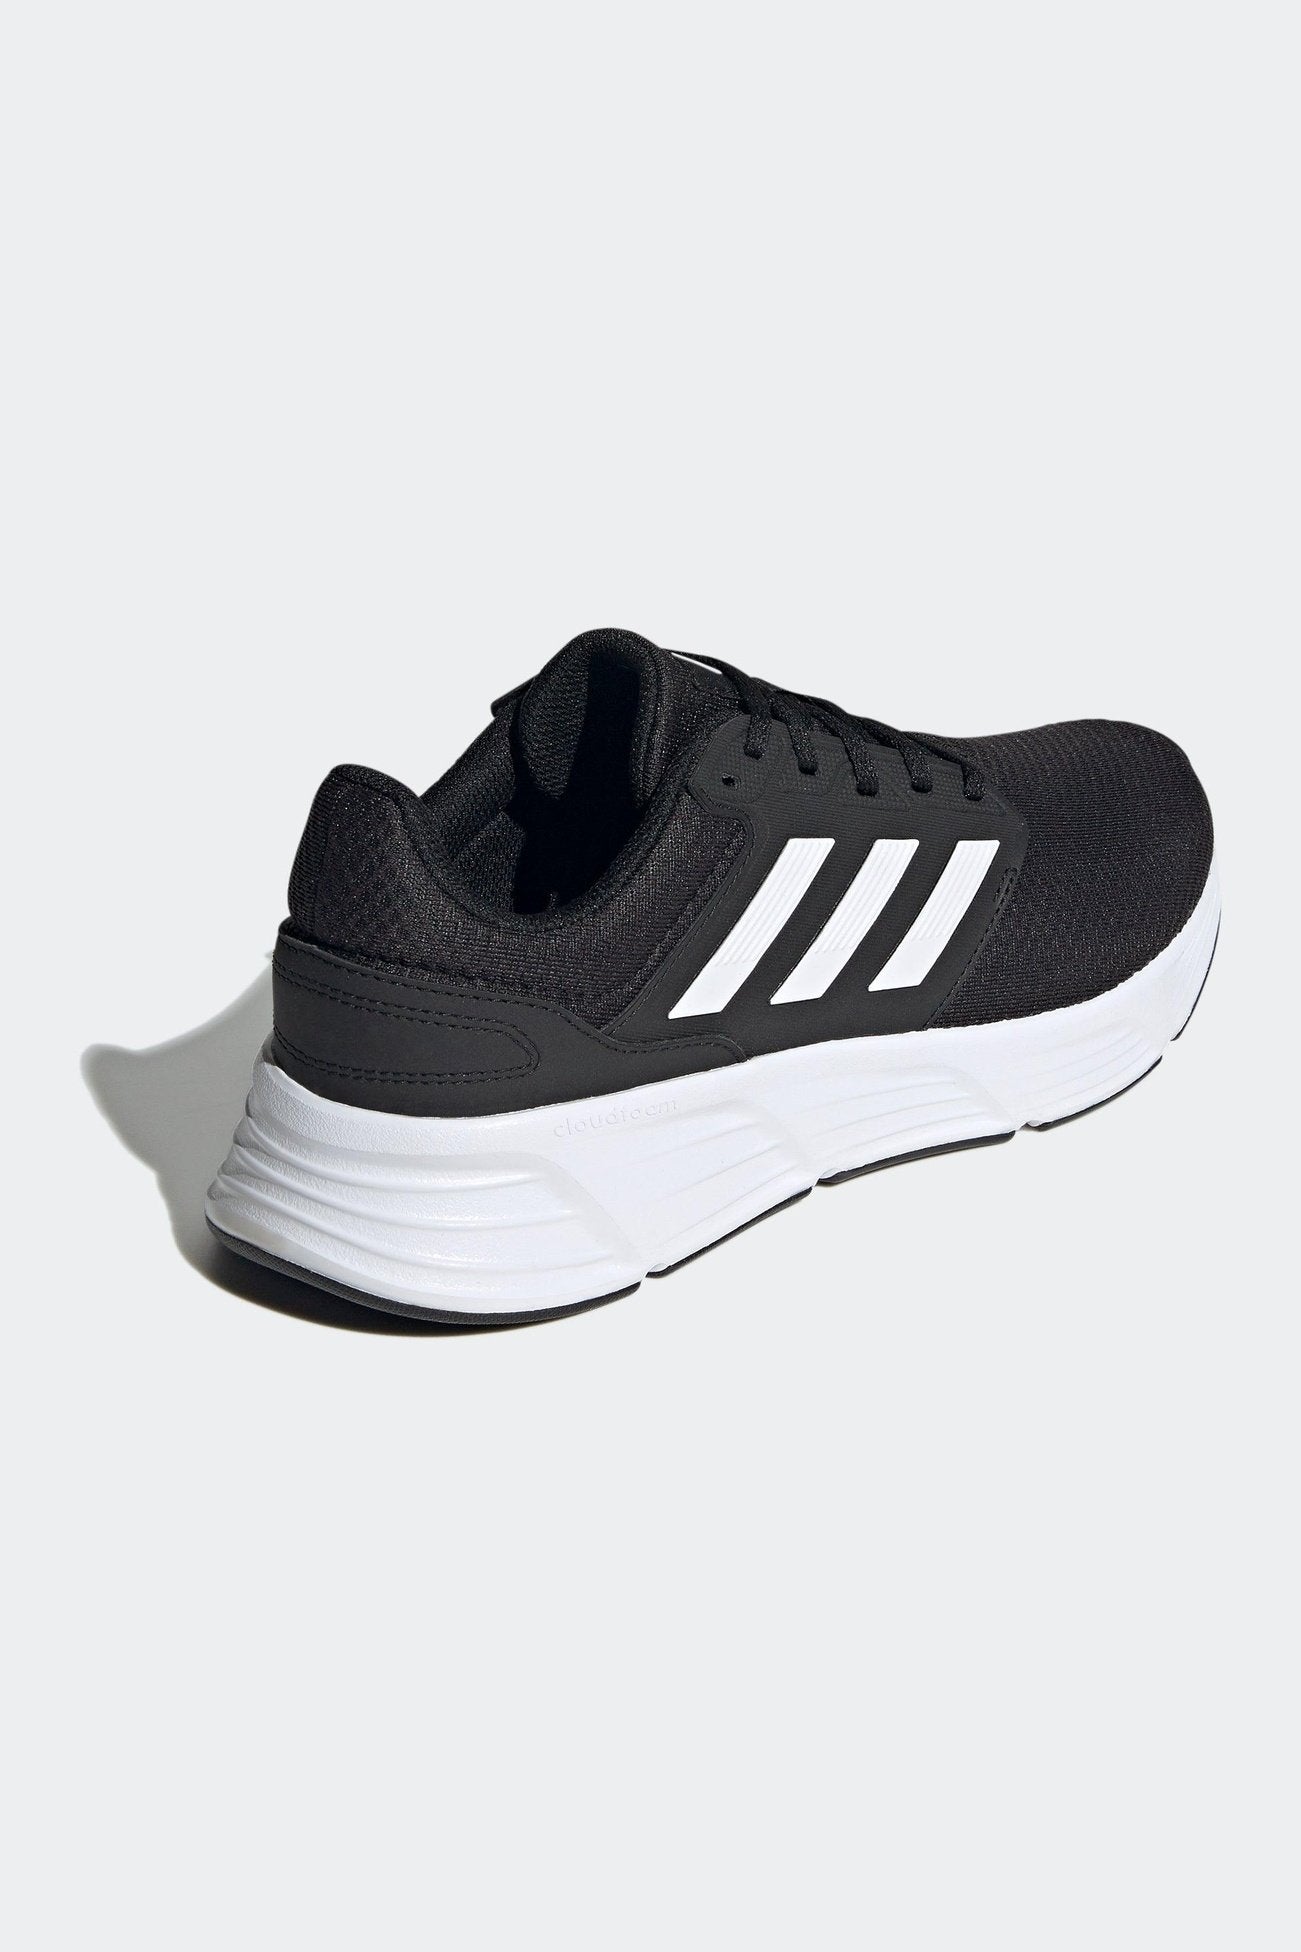 נעלי ריצה לגבר GALAXY 6 בצבע שחור ולבן - MASHBIR//365